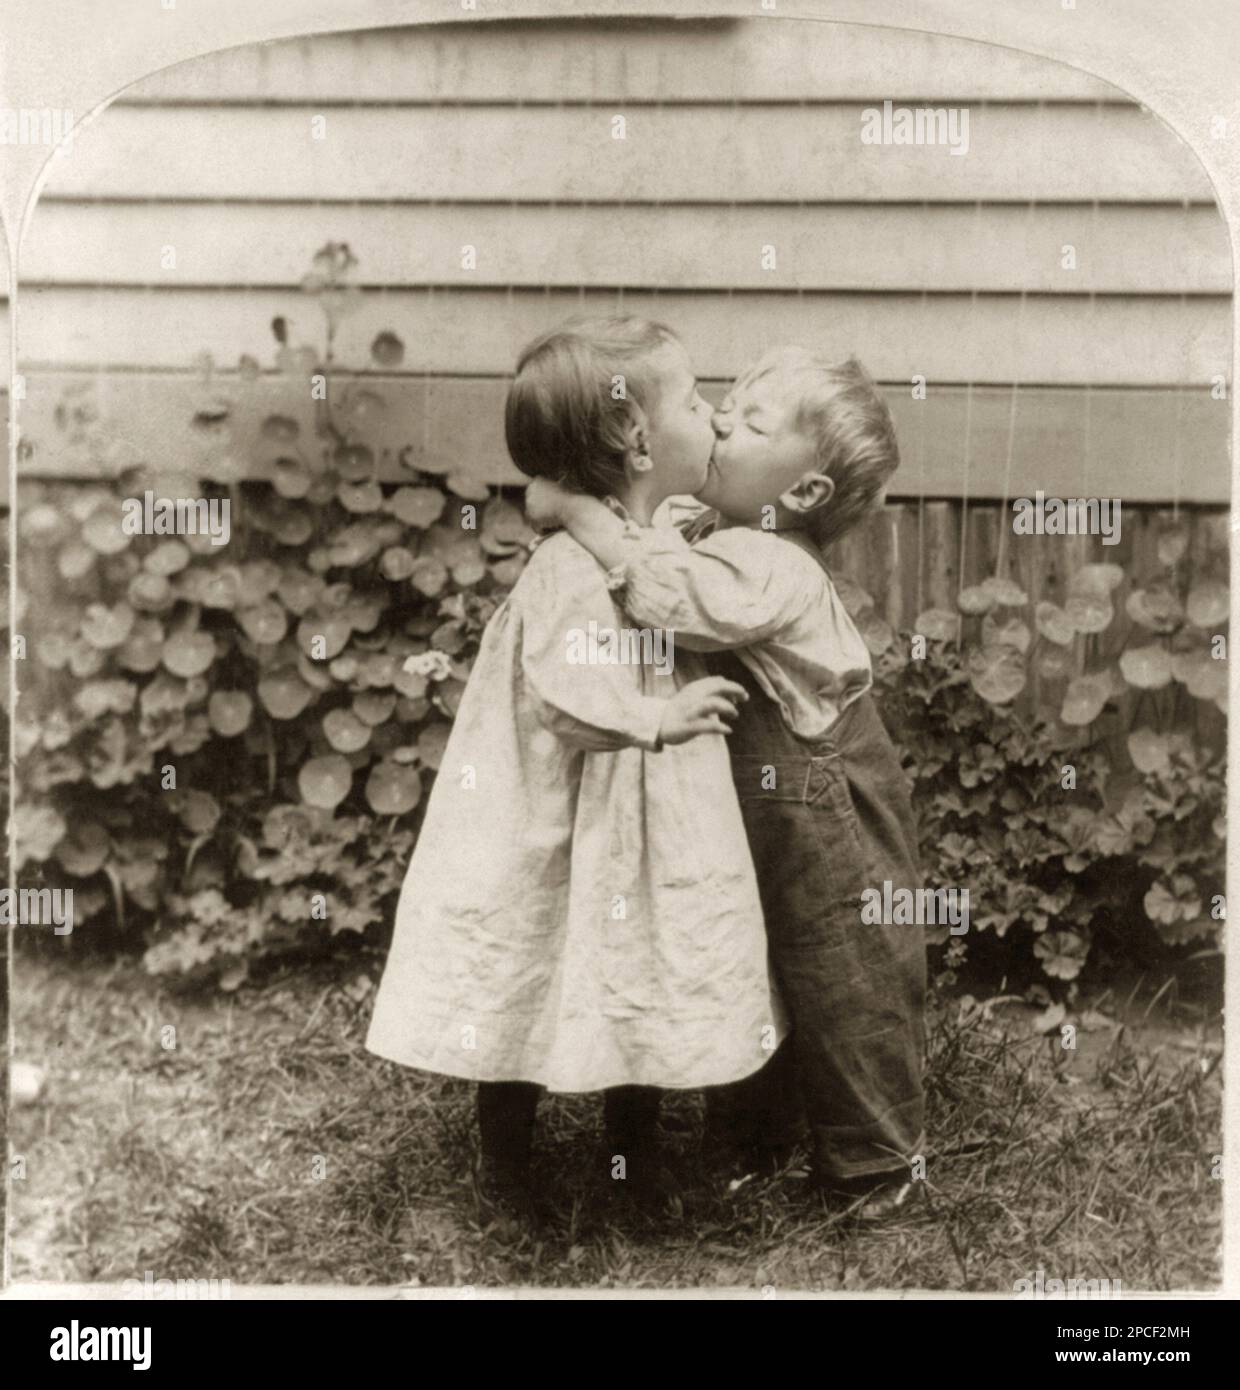 1898 , USA : 'lei ha il centesimo, ha il bacio'. Due bambini piccoli baciano . Cartolina fotografica Stereograph di M.H. Zahner, Cascate del Niagara, N.Y. - KISS - BACIO - SENTIMENTALE - SENSIBILE - ROMANTICO - ROMANTICO - FOTO STORICHE - FOTO STORICHE - - - BAMBINO - BAMBINA - BAMBINA - BAMBINA - BAMBINO - BAMBINA - BAMBINO - BAMBINA - BAMBINO - BAMBINO - BAMBINO - INFANZIA - INFANZIA - OTTOCENTO - 800'S - '800 - MODA - MODA - JEANS - giardino - giardino - RITRATTO - ritratto ----- Archivio GBB Foto Stock